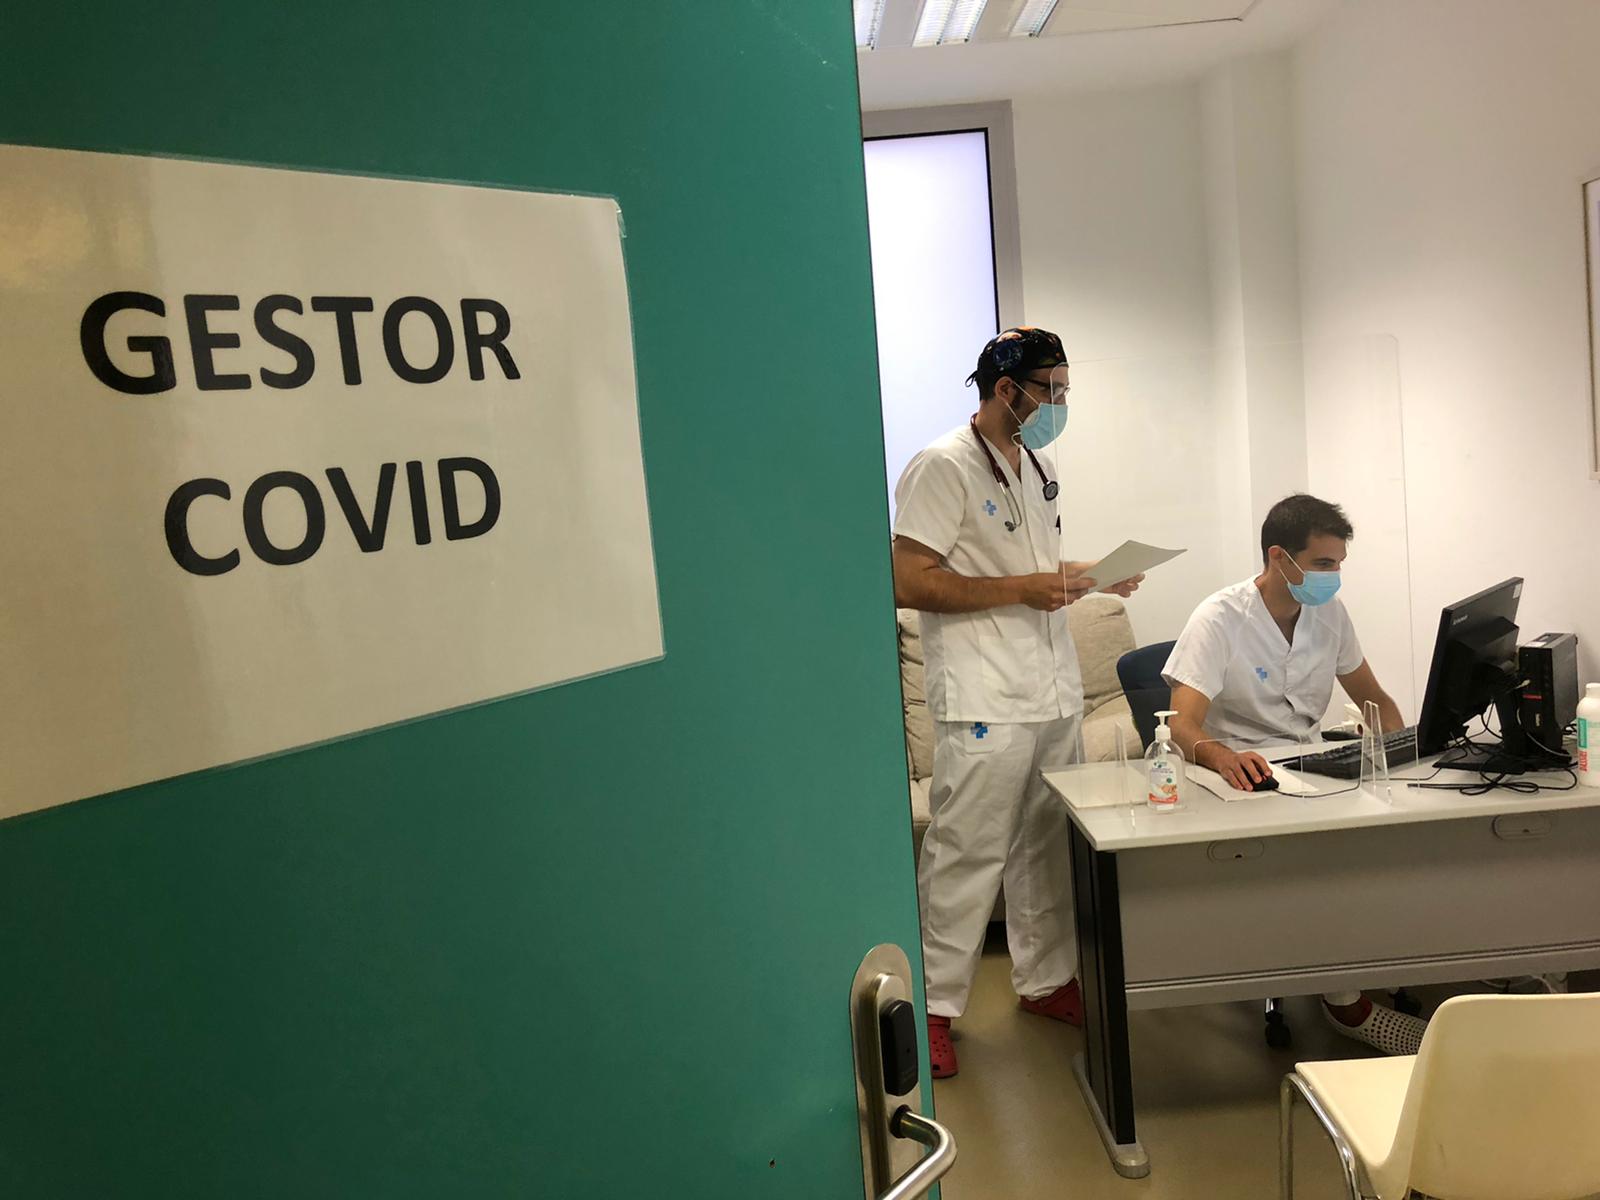 Dos hospitales de Lleida, pioneros en Catalunya a incorporar gestores Covid